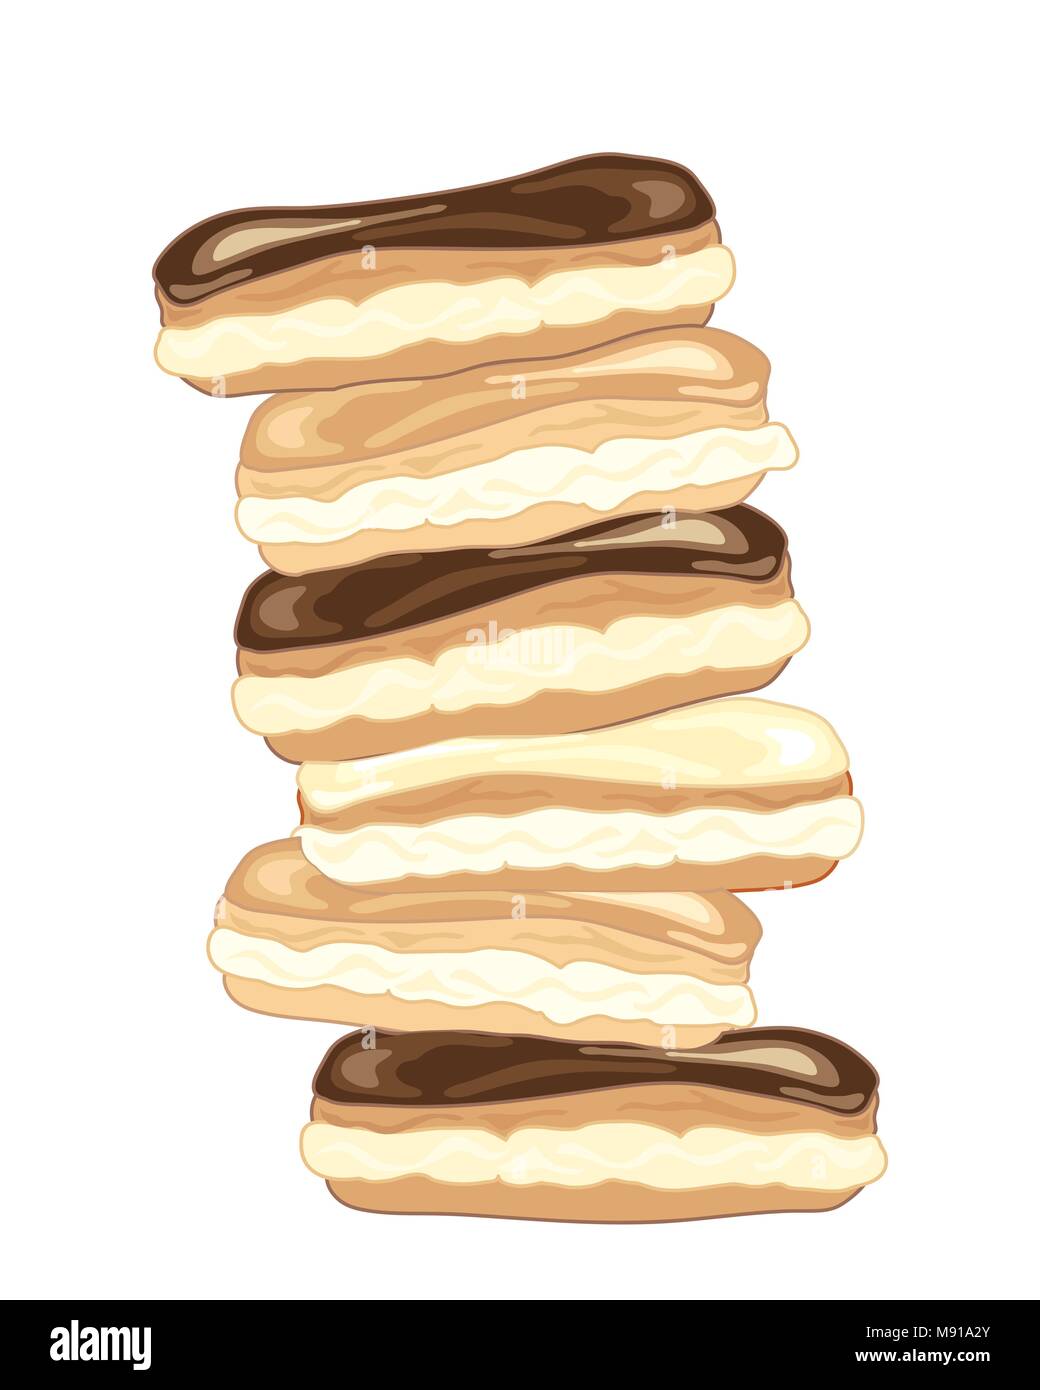 Un vecteur illustration en eps 8 format d'un tumbling pile de délicieux éclairs au chocolat sur fond blanc Illustration de Vecteur